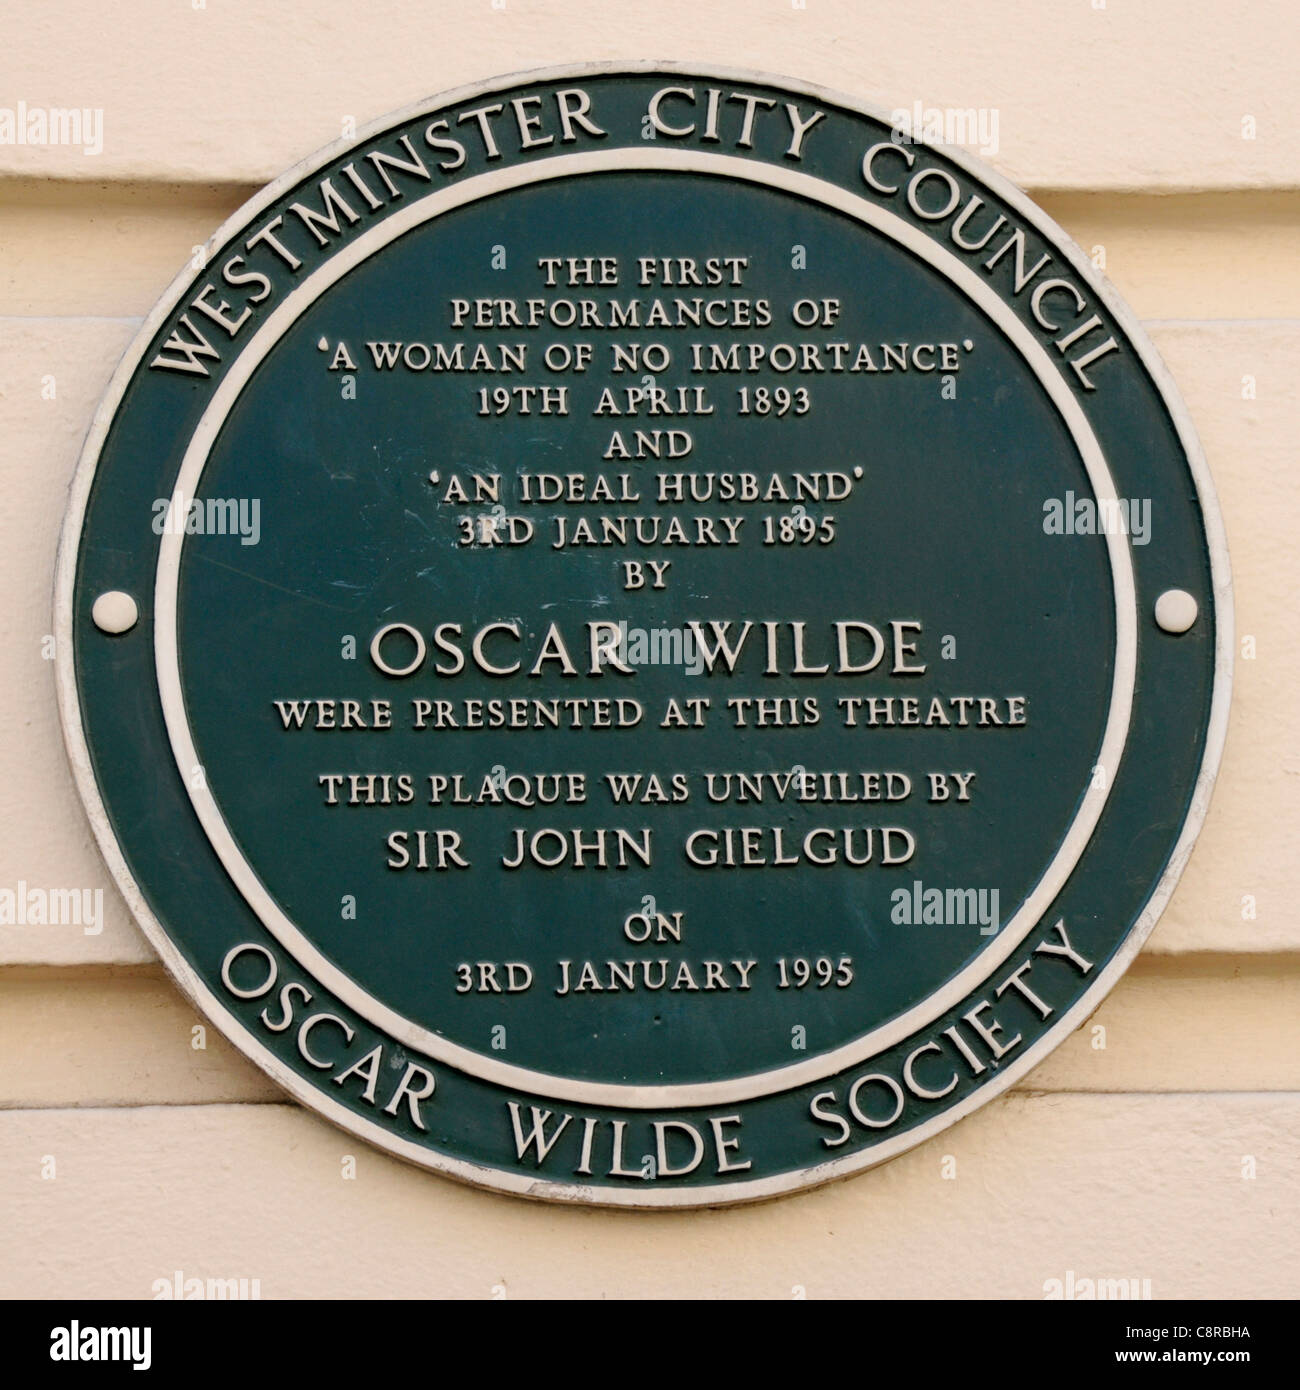 La société Oscar Wilde plaque à la Theatre Royal Haymarket London recording premières représentations de deux Widle Oscar joue West End de Londres Angleterre Royaume-uni Banque D'Images